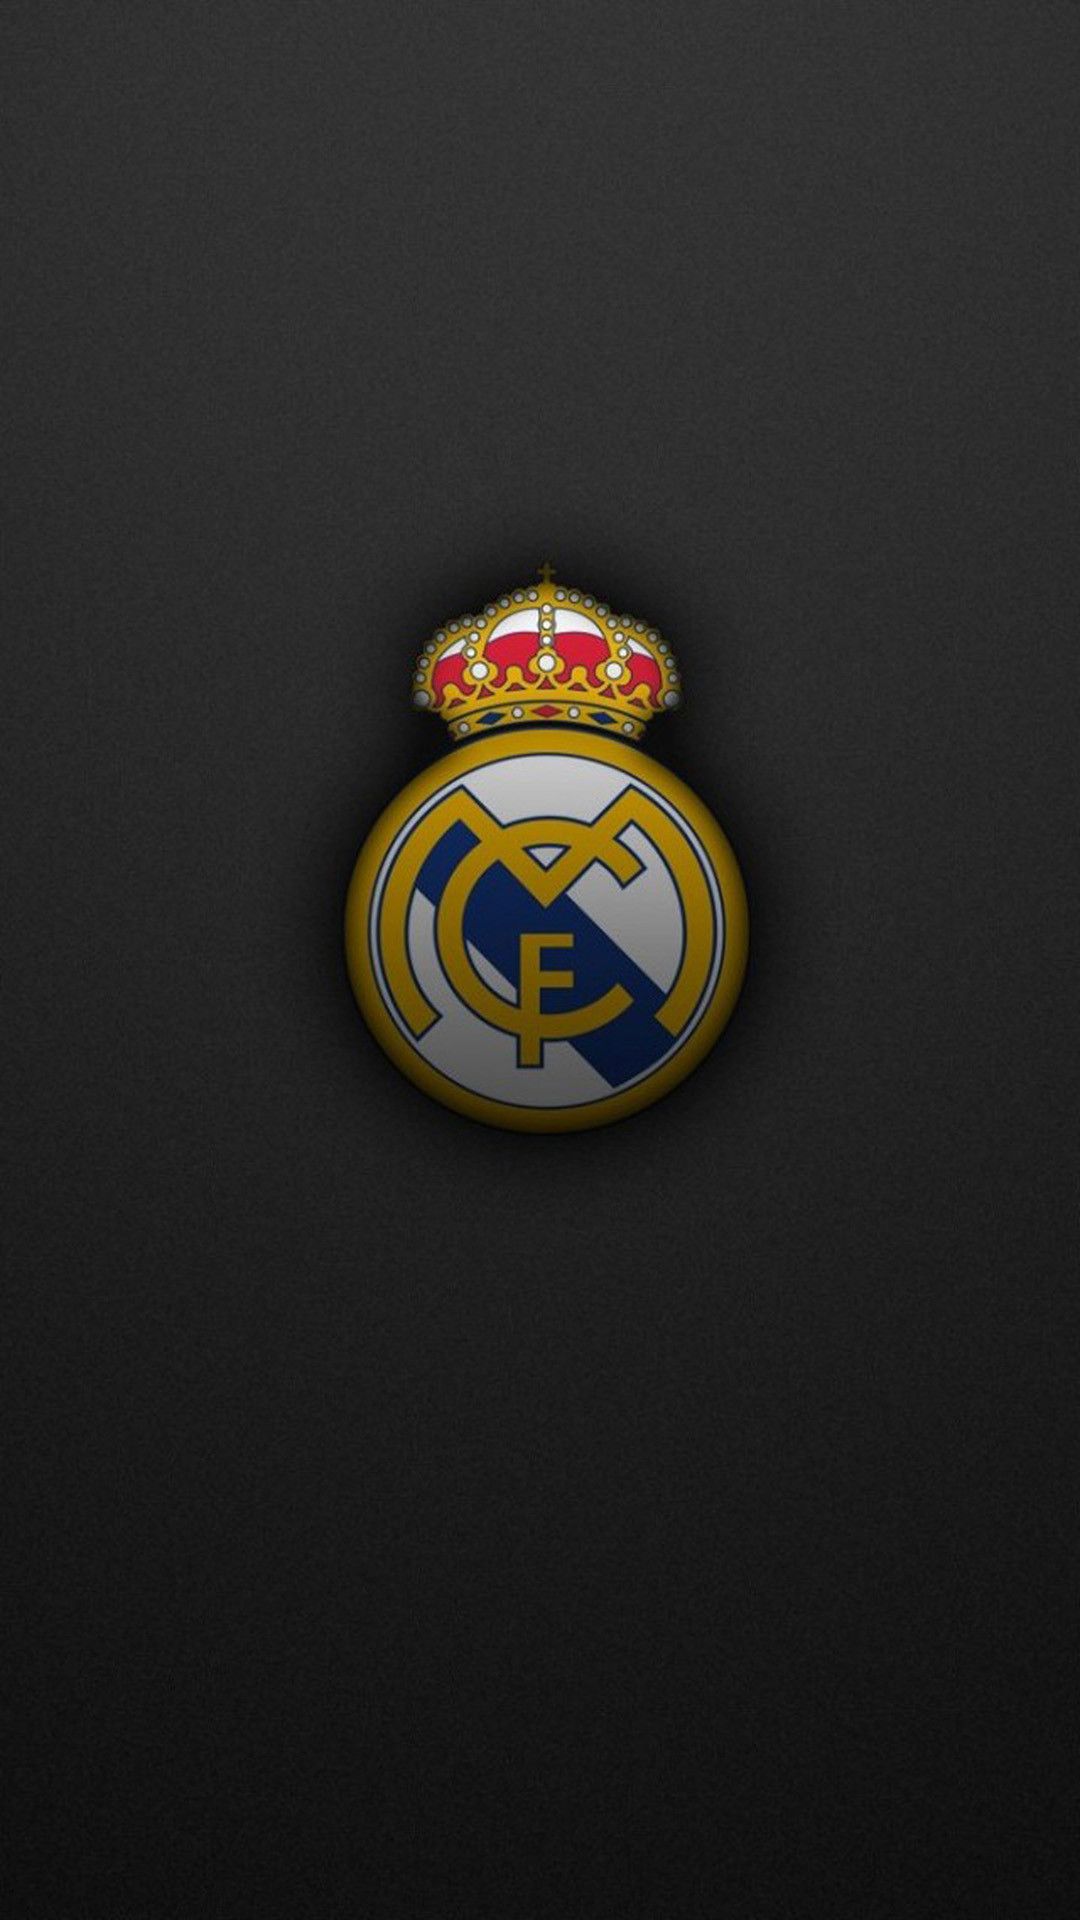 Nếu bạn là một fan của Real Madrid, hãy cập nhật ngay với những hình nền đẹp nhất của đội bóng này. Với chiếc điện thoại của bạn, bạn có thể trang trí cho mình một màn hình độc đáo và hấp dẫn với những hình ảnh Real Madrid thôi nào!